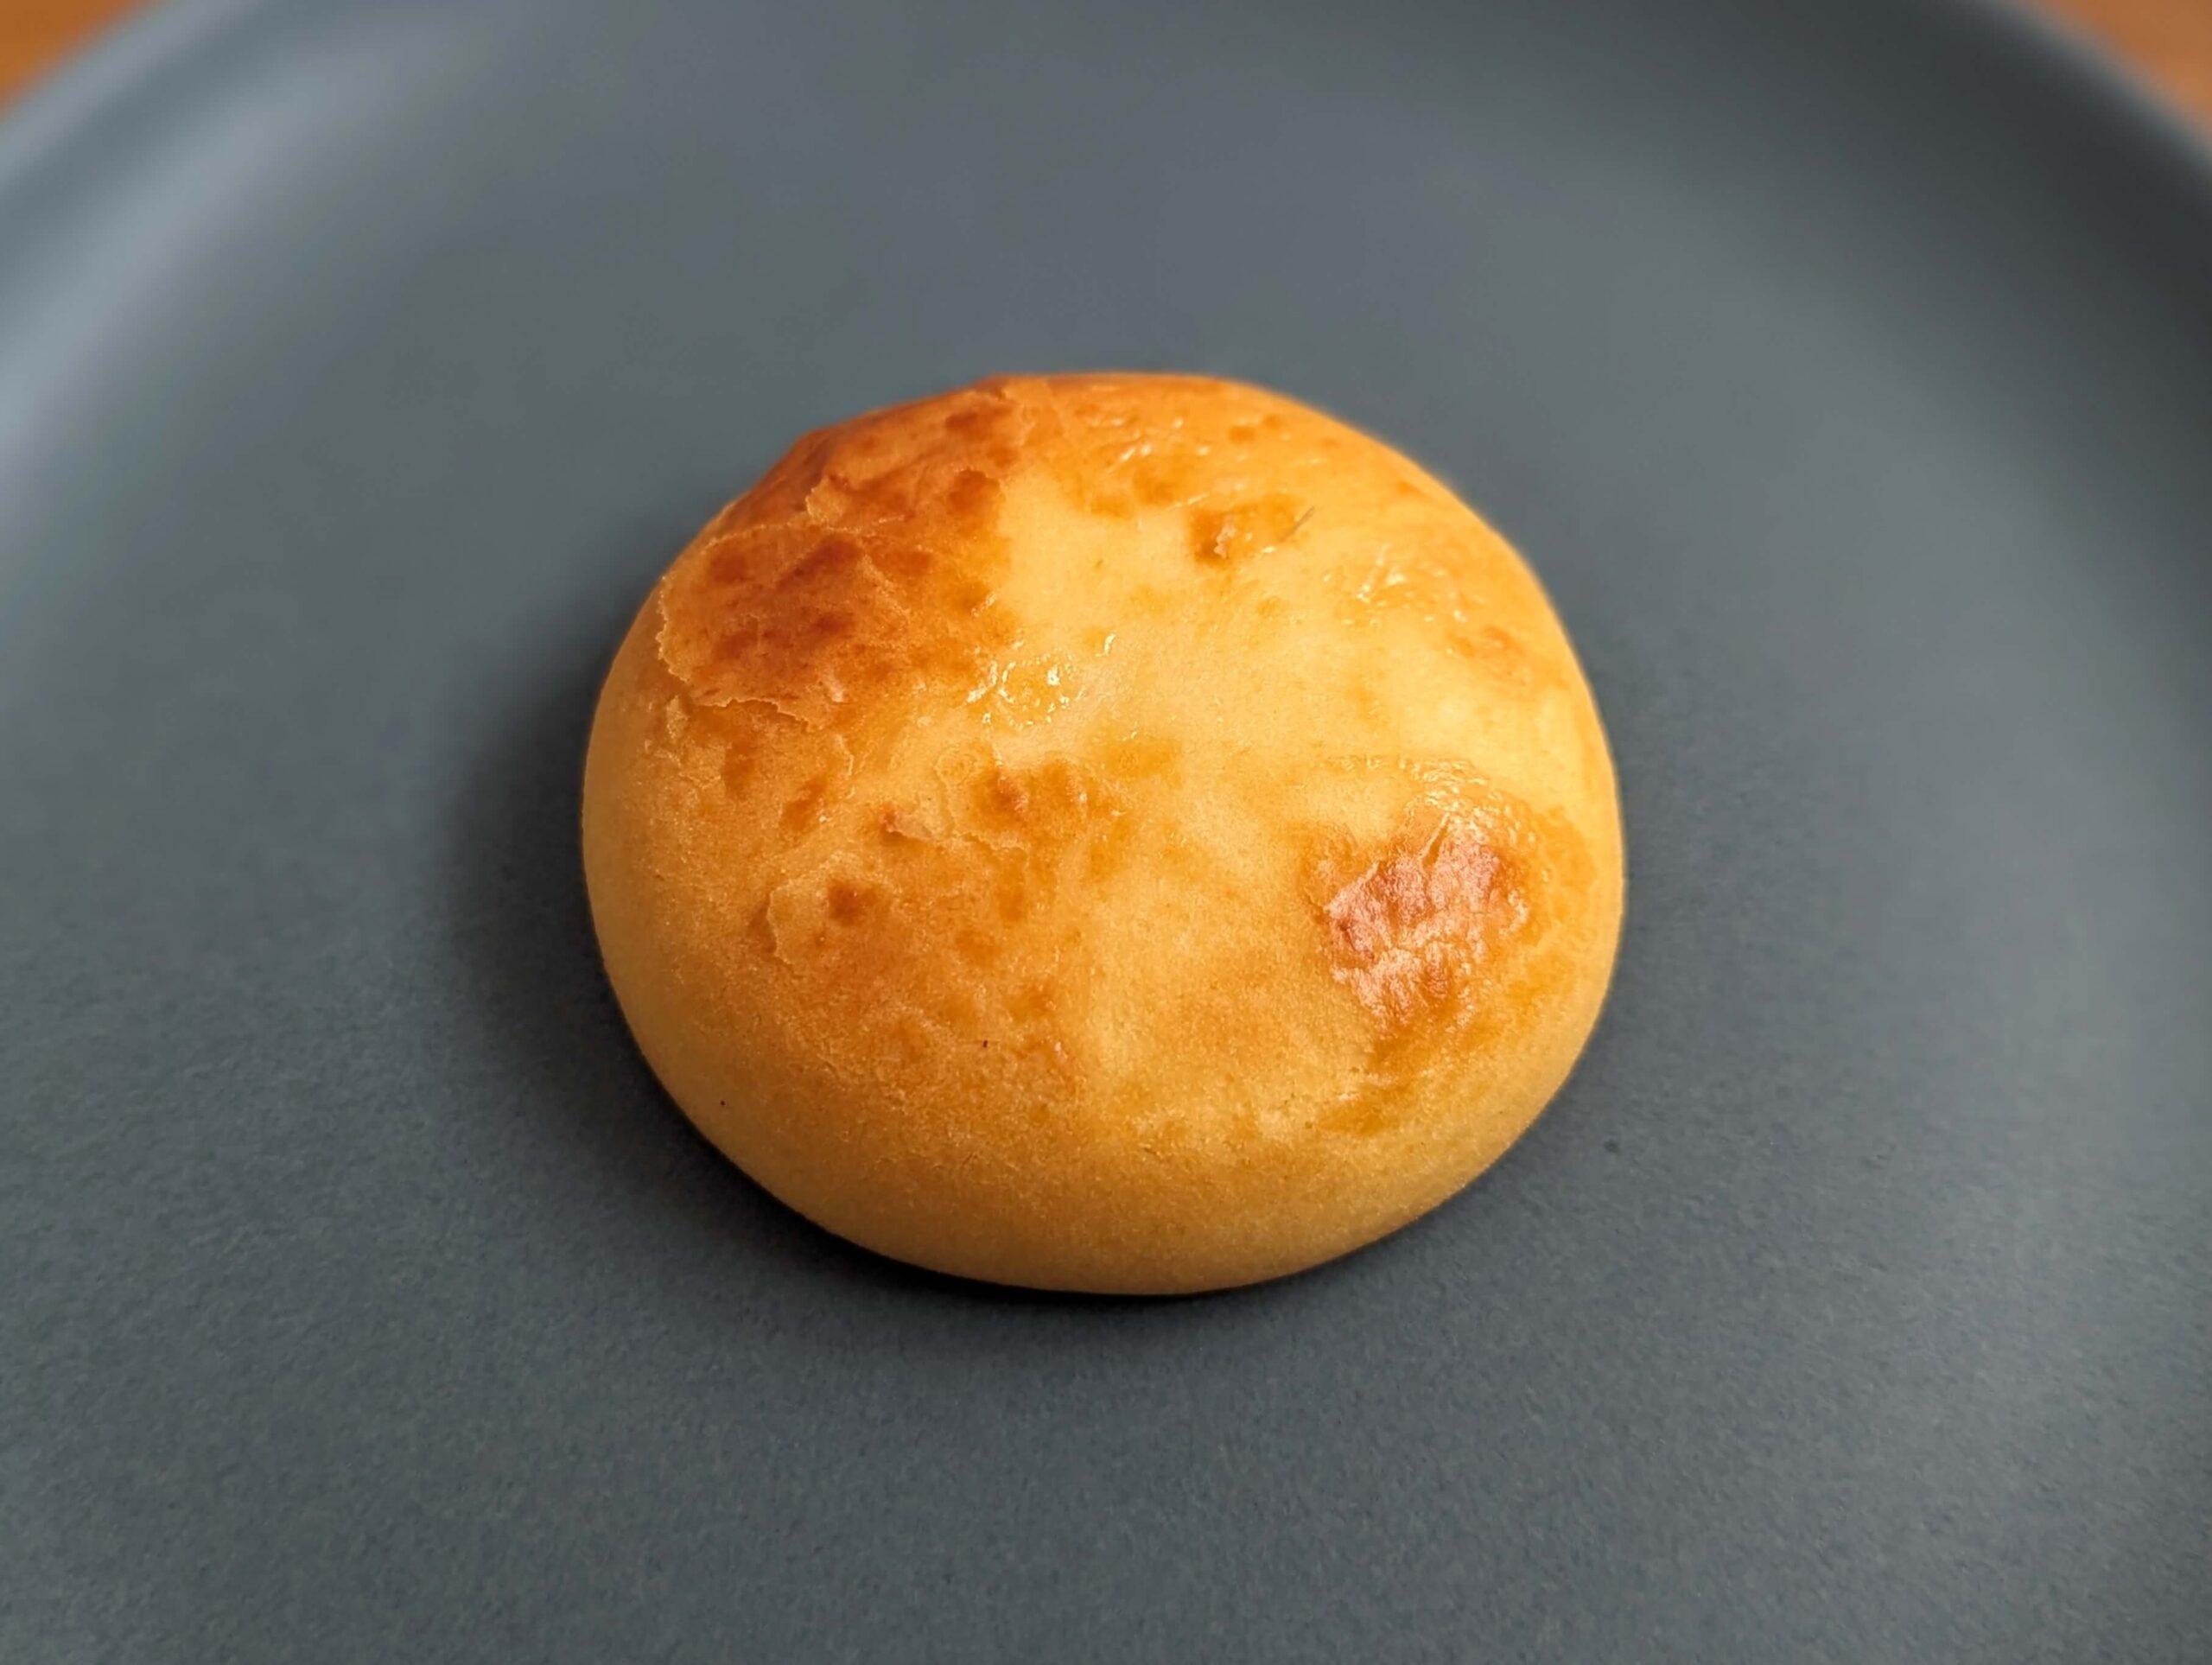 シャトレーゼの「濃厚チーズクリーム 窯焼きチーズ饅頭」 (6)